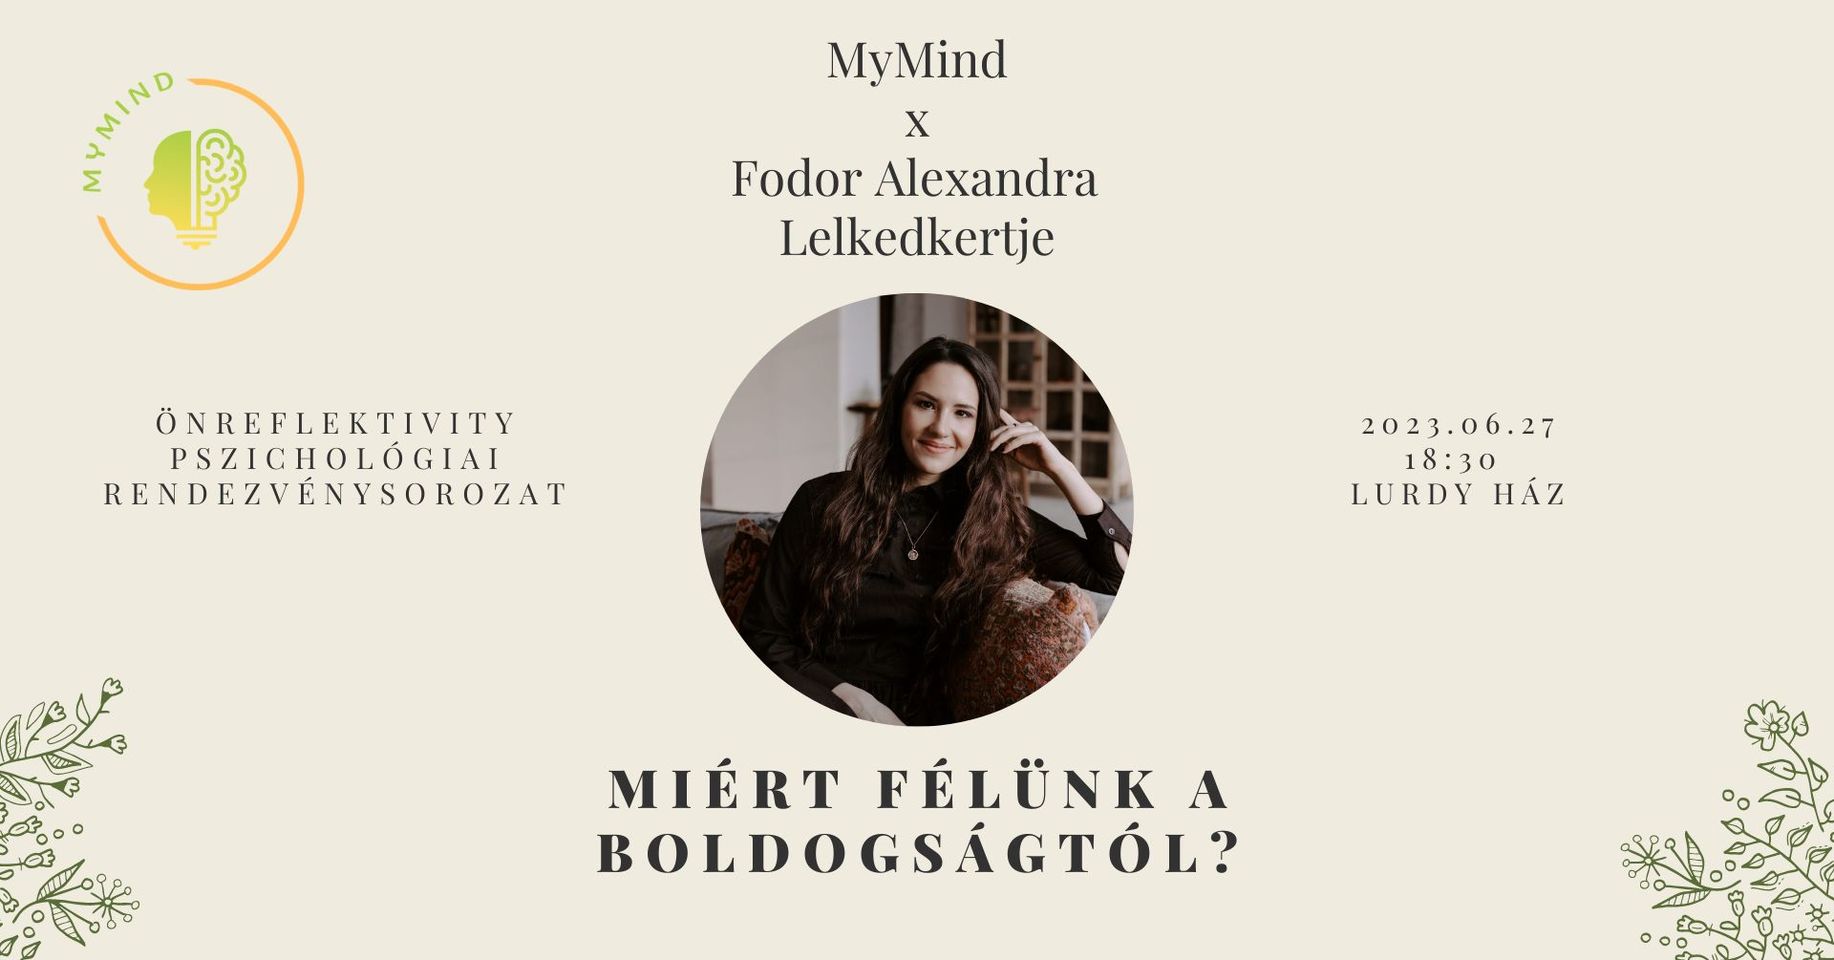 MyMind x Fodor Alexandra - Lelkedkertje – Miért félünk a boldogságtól?